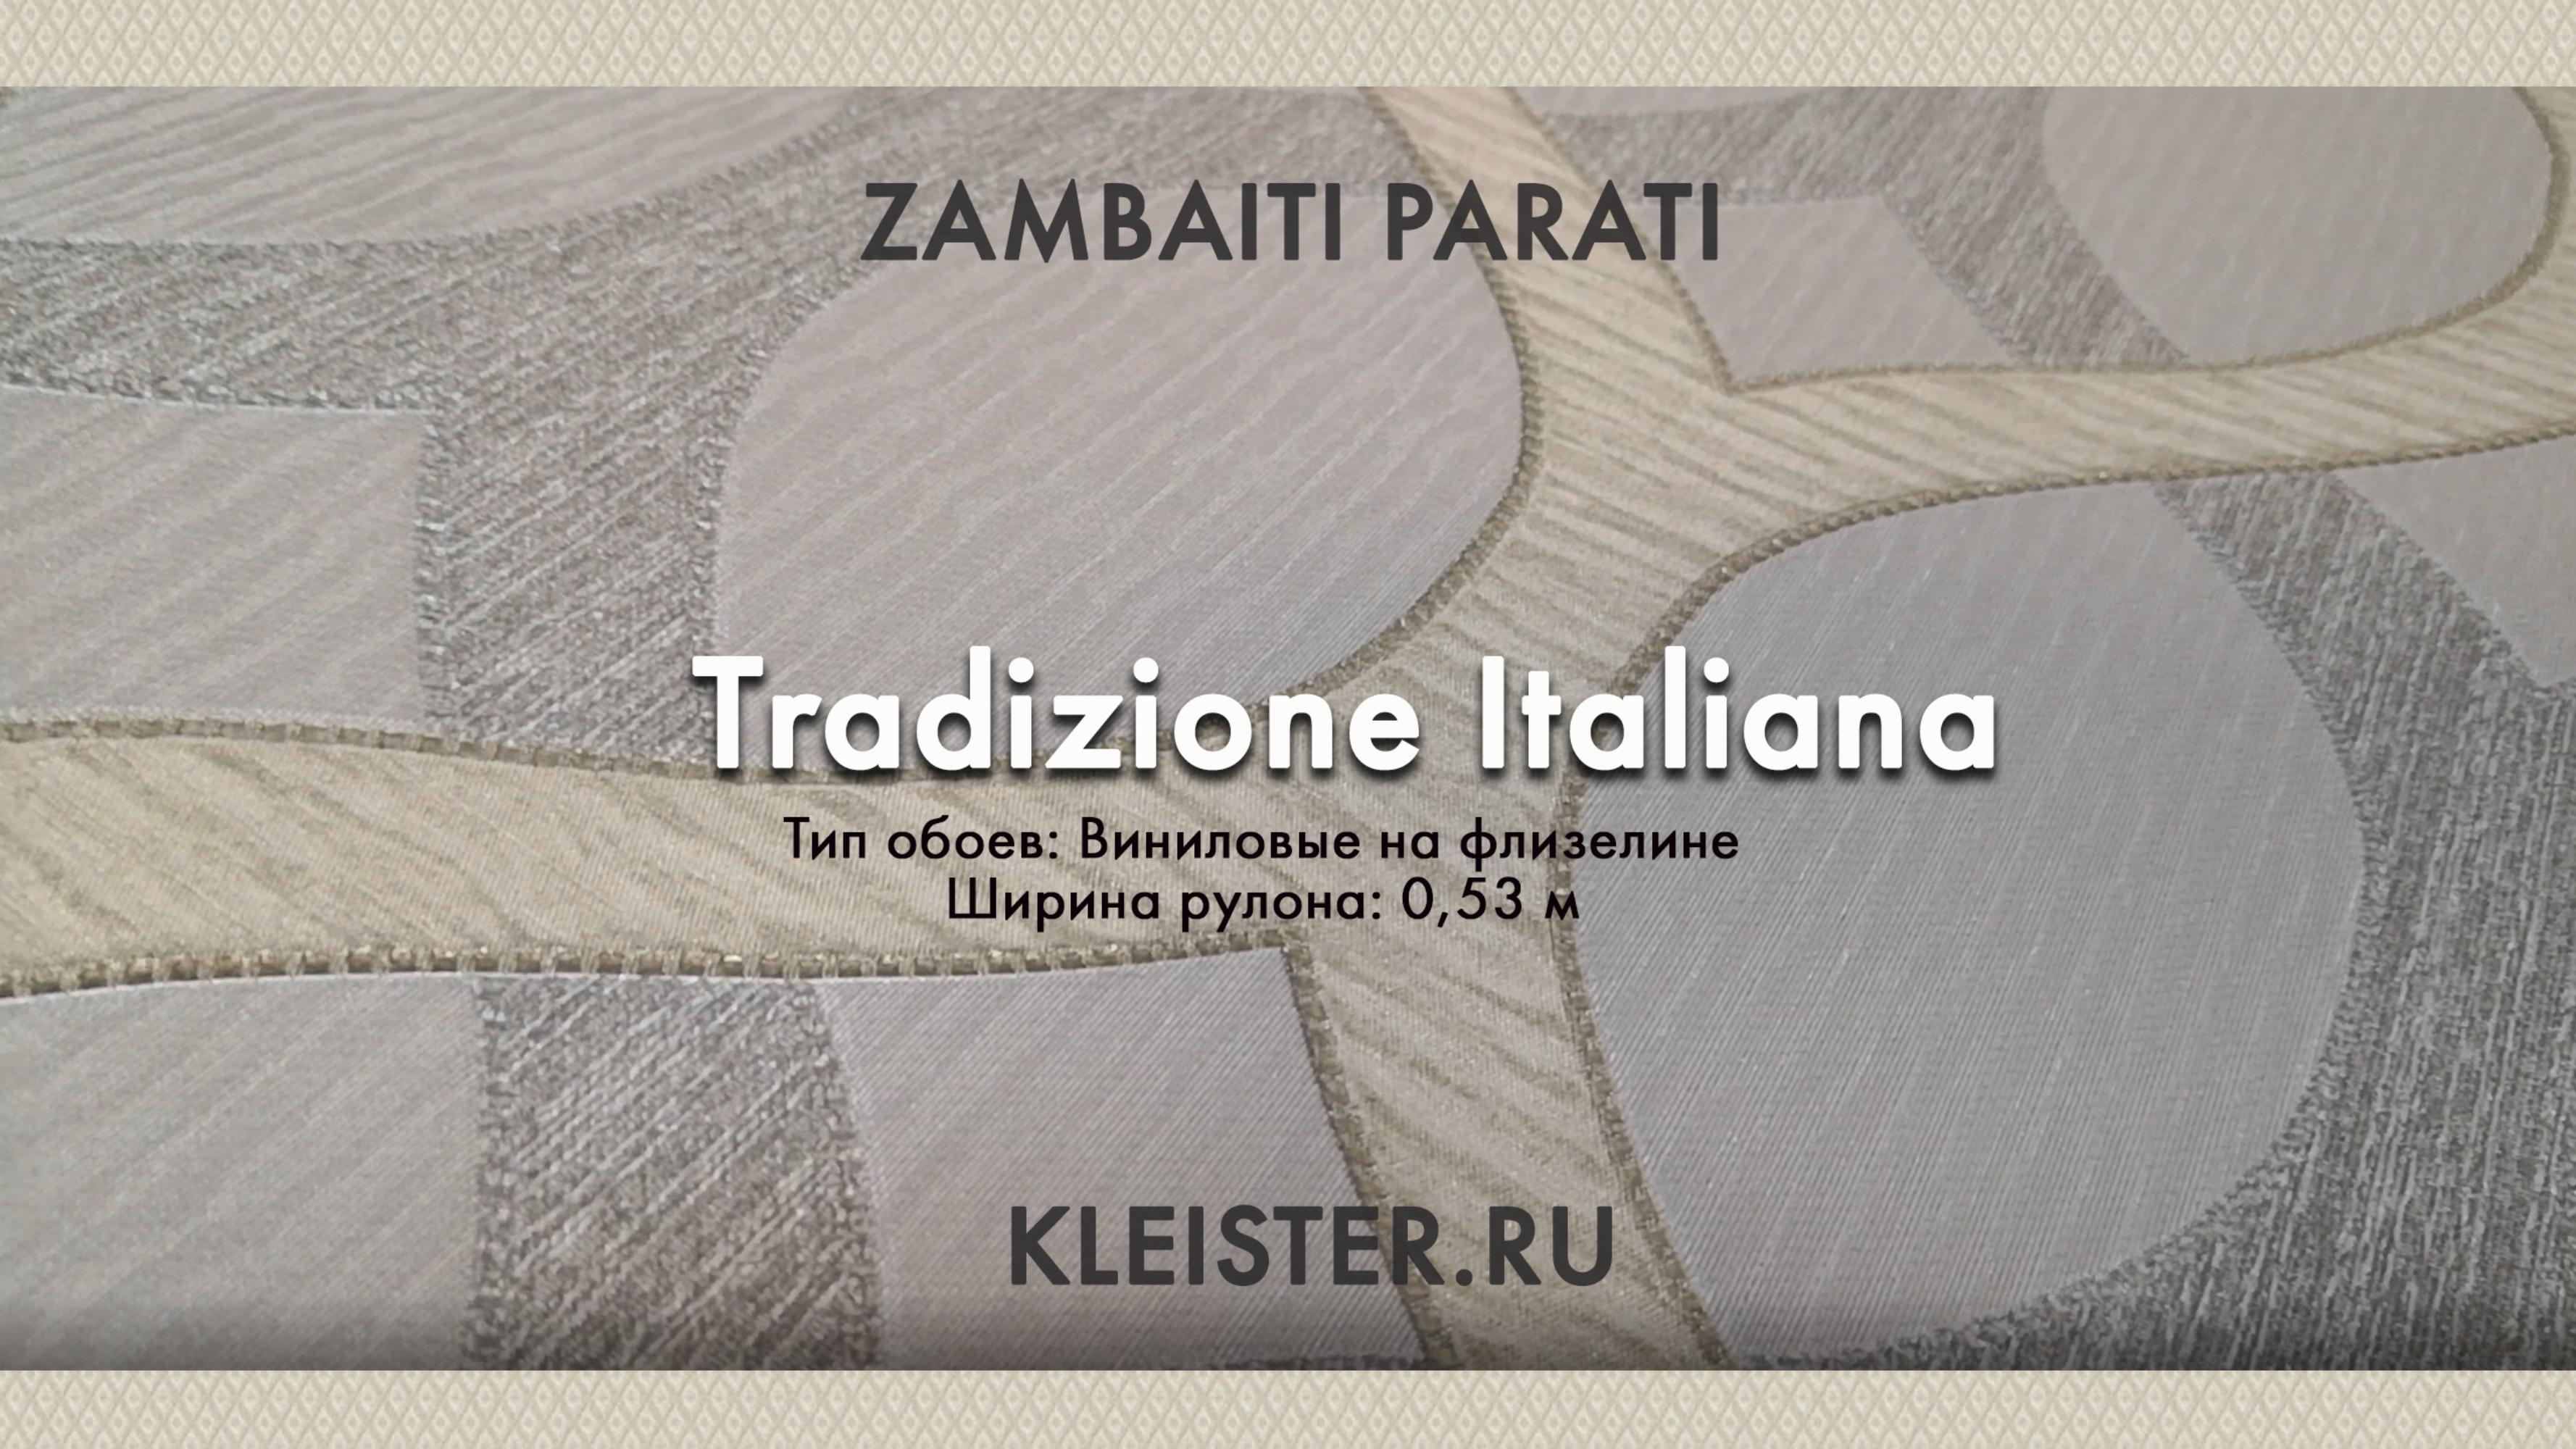 Обои Tradizione Italiana от Zambaiti Parati